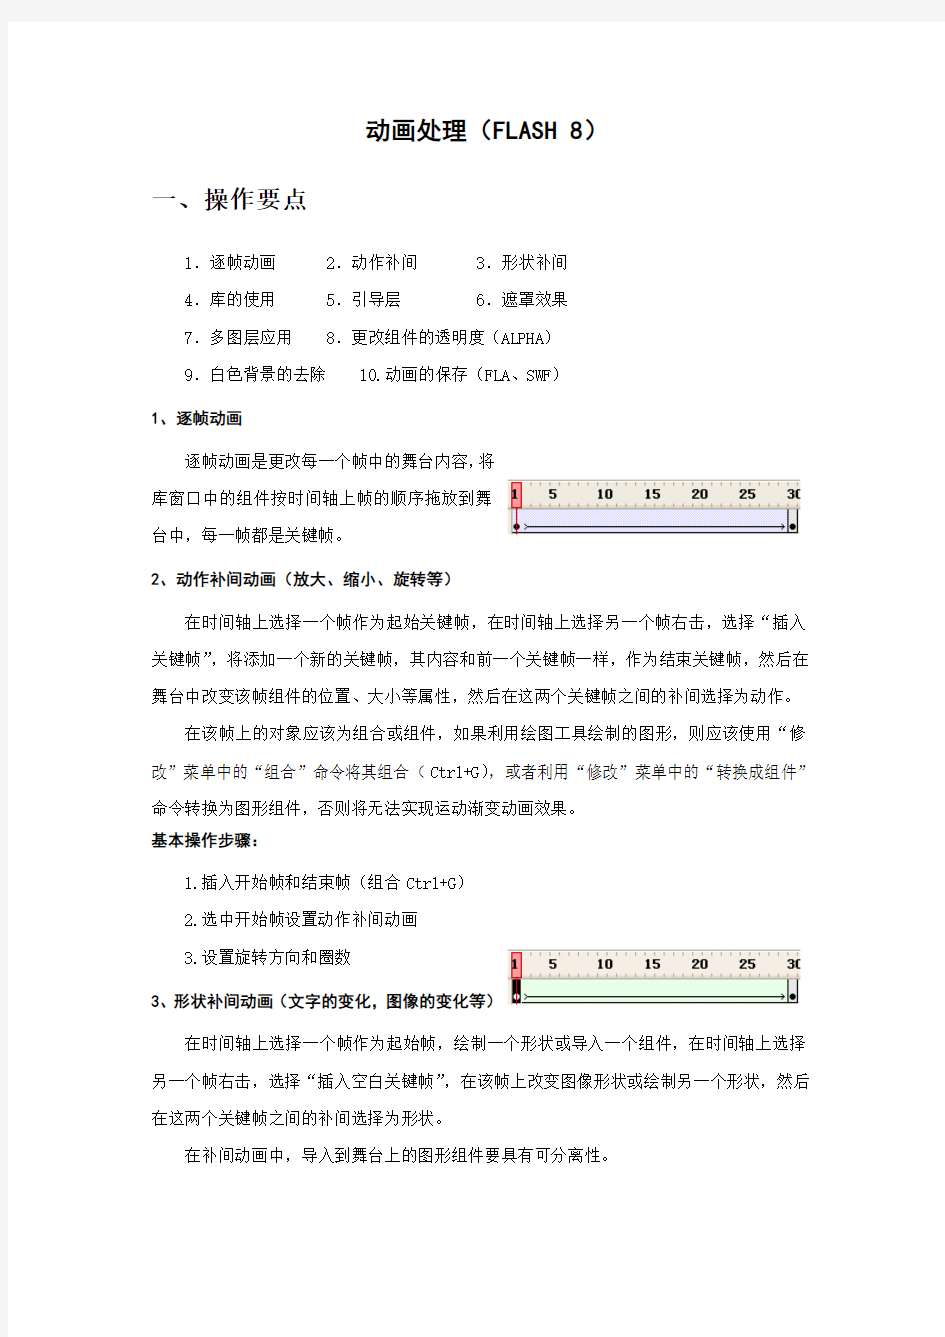 上海计算机一级考试----Flash操作注意要点